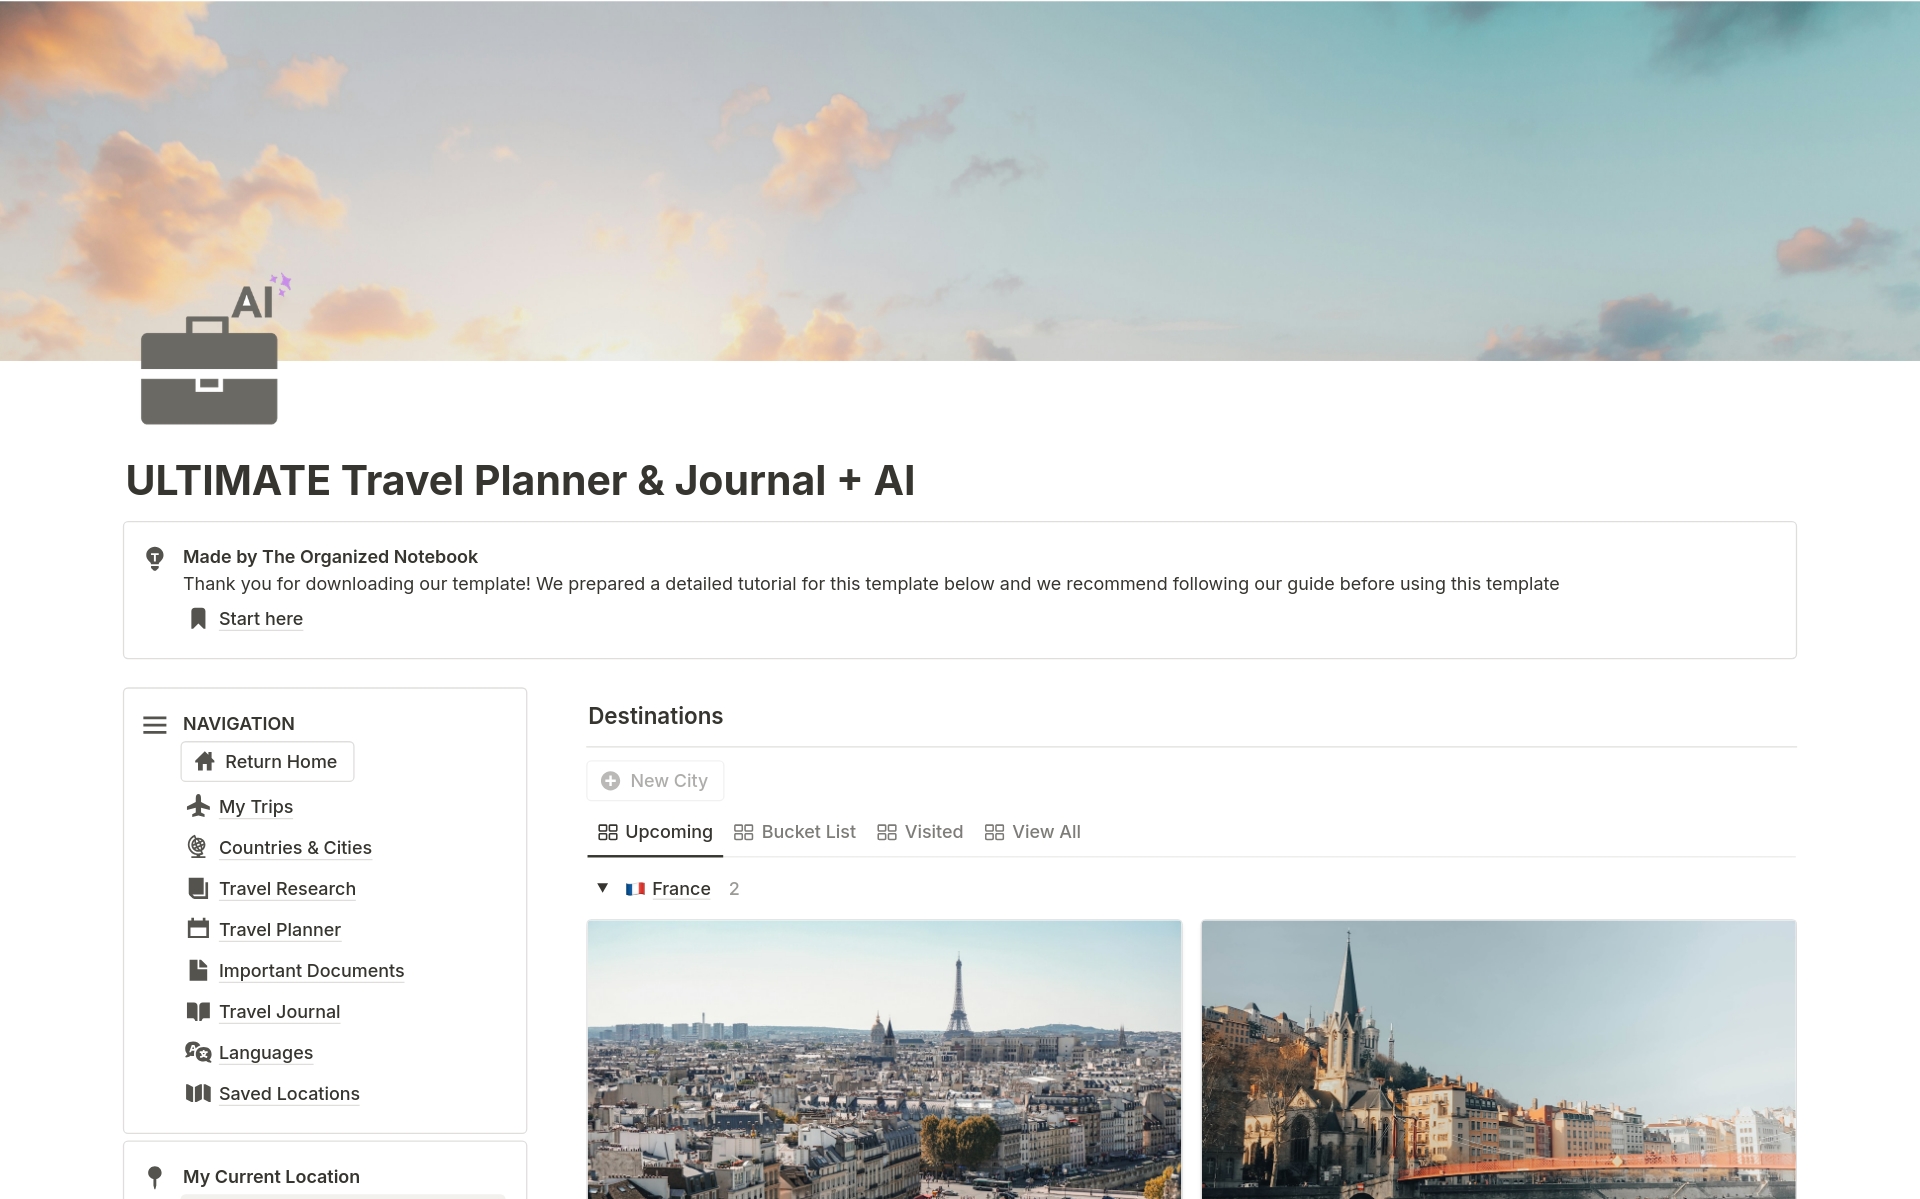 Uma prévia do modelo para ULTIMATE Travel Planner & Journal + AI